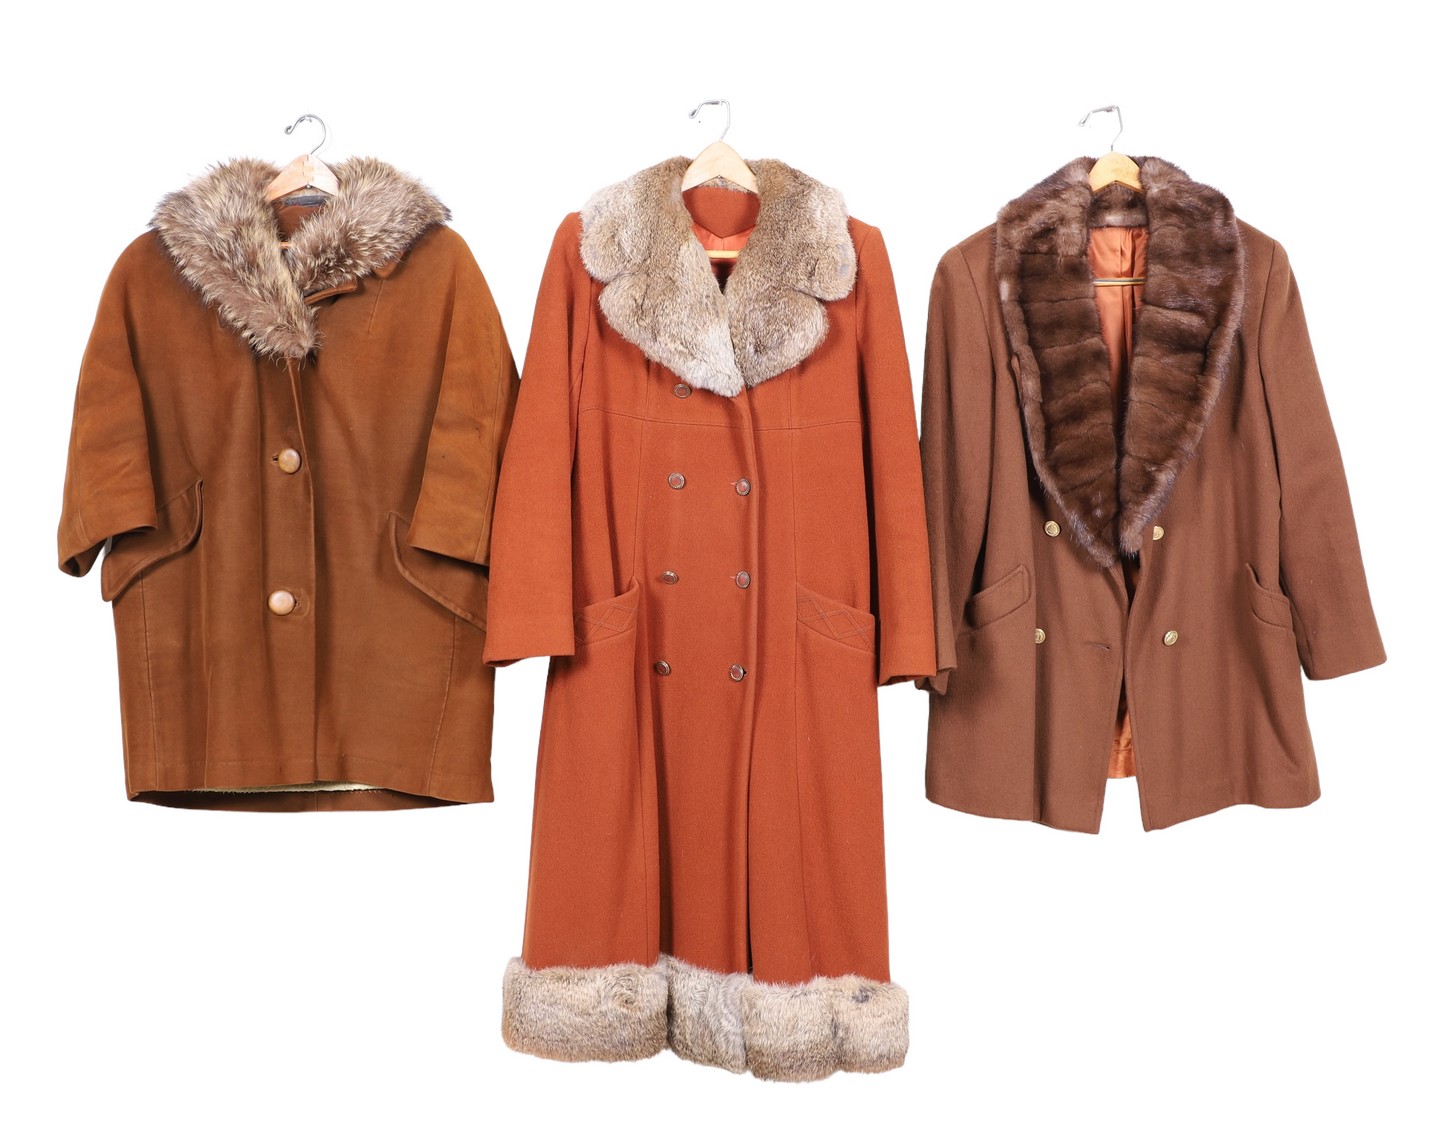  3 Vintage wool fur collared coats 317dd4